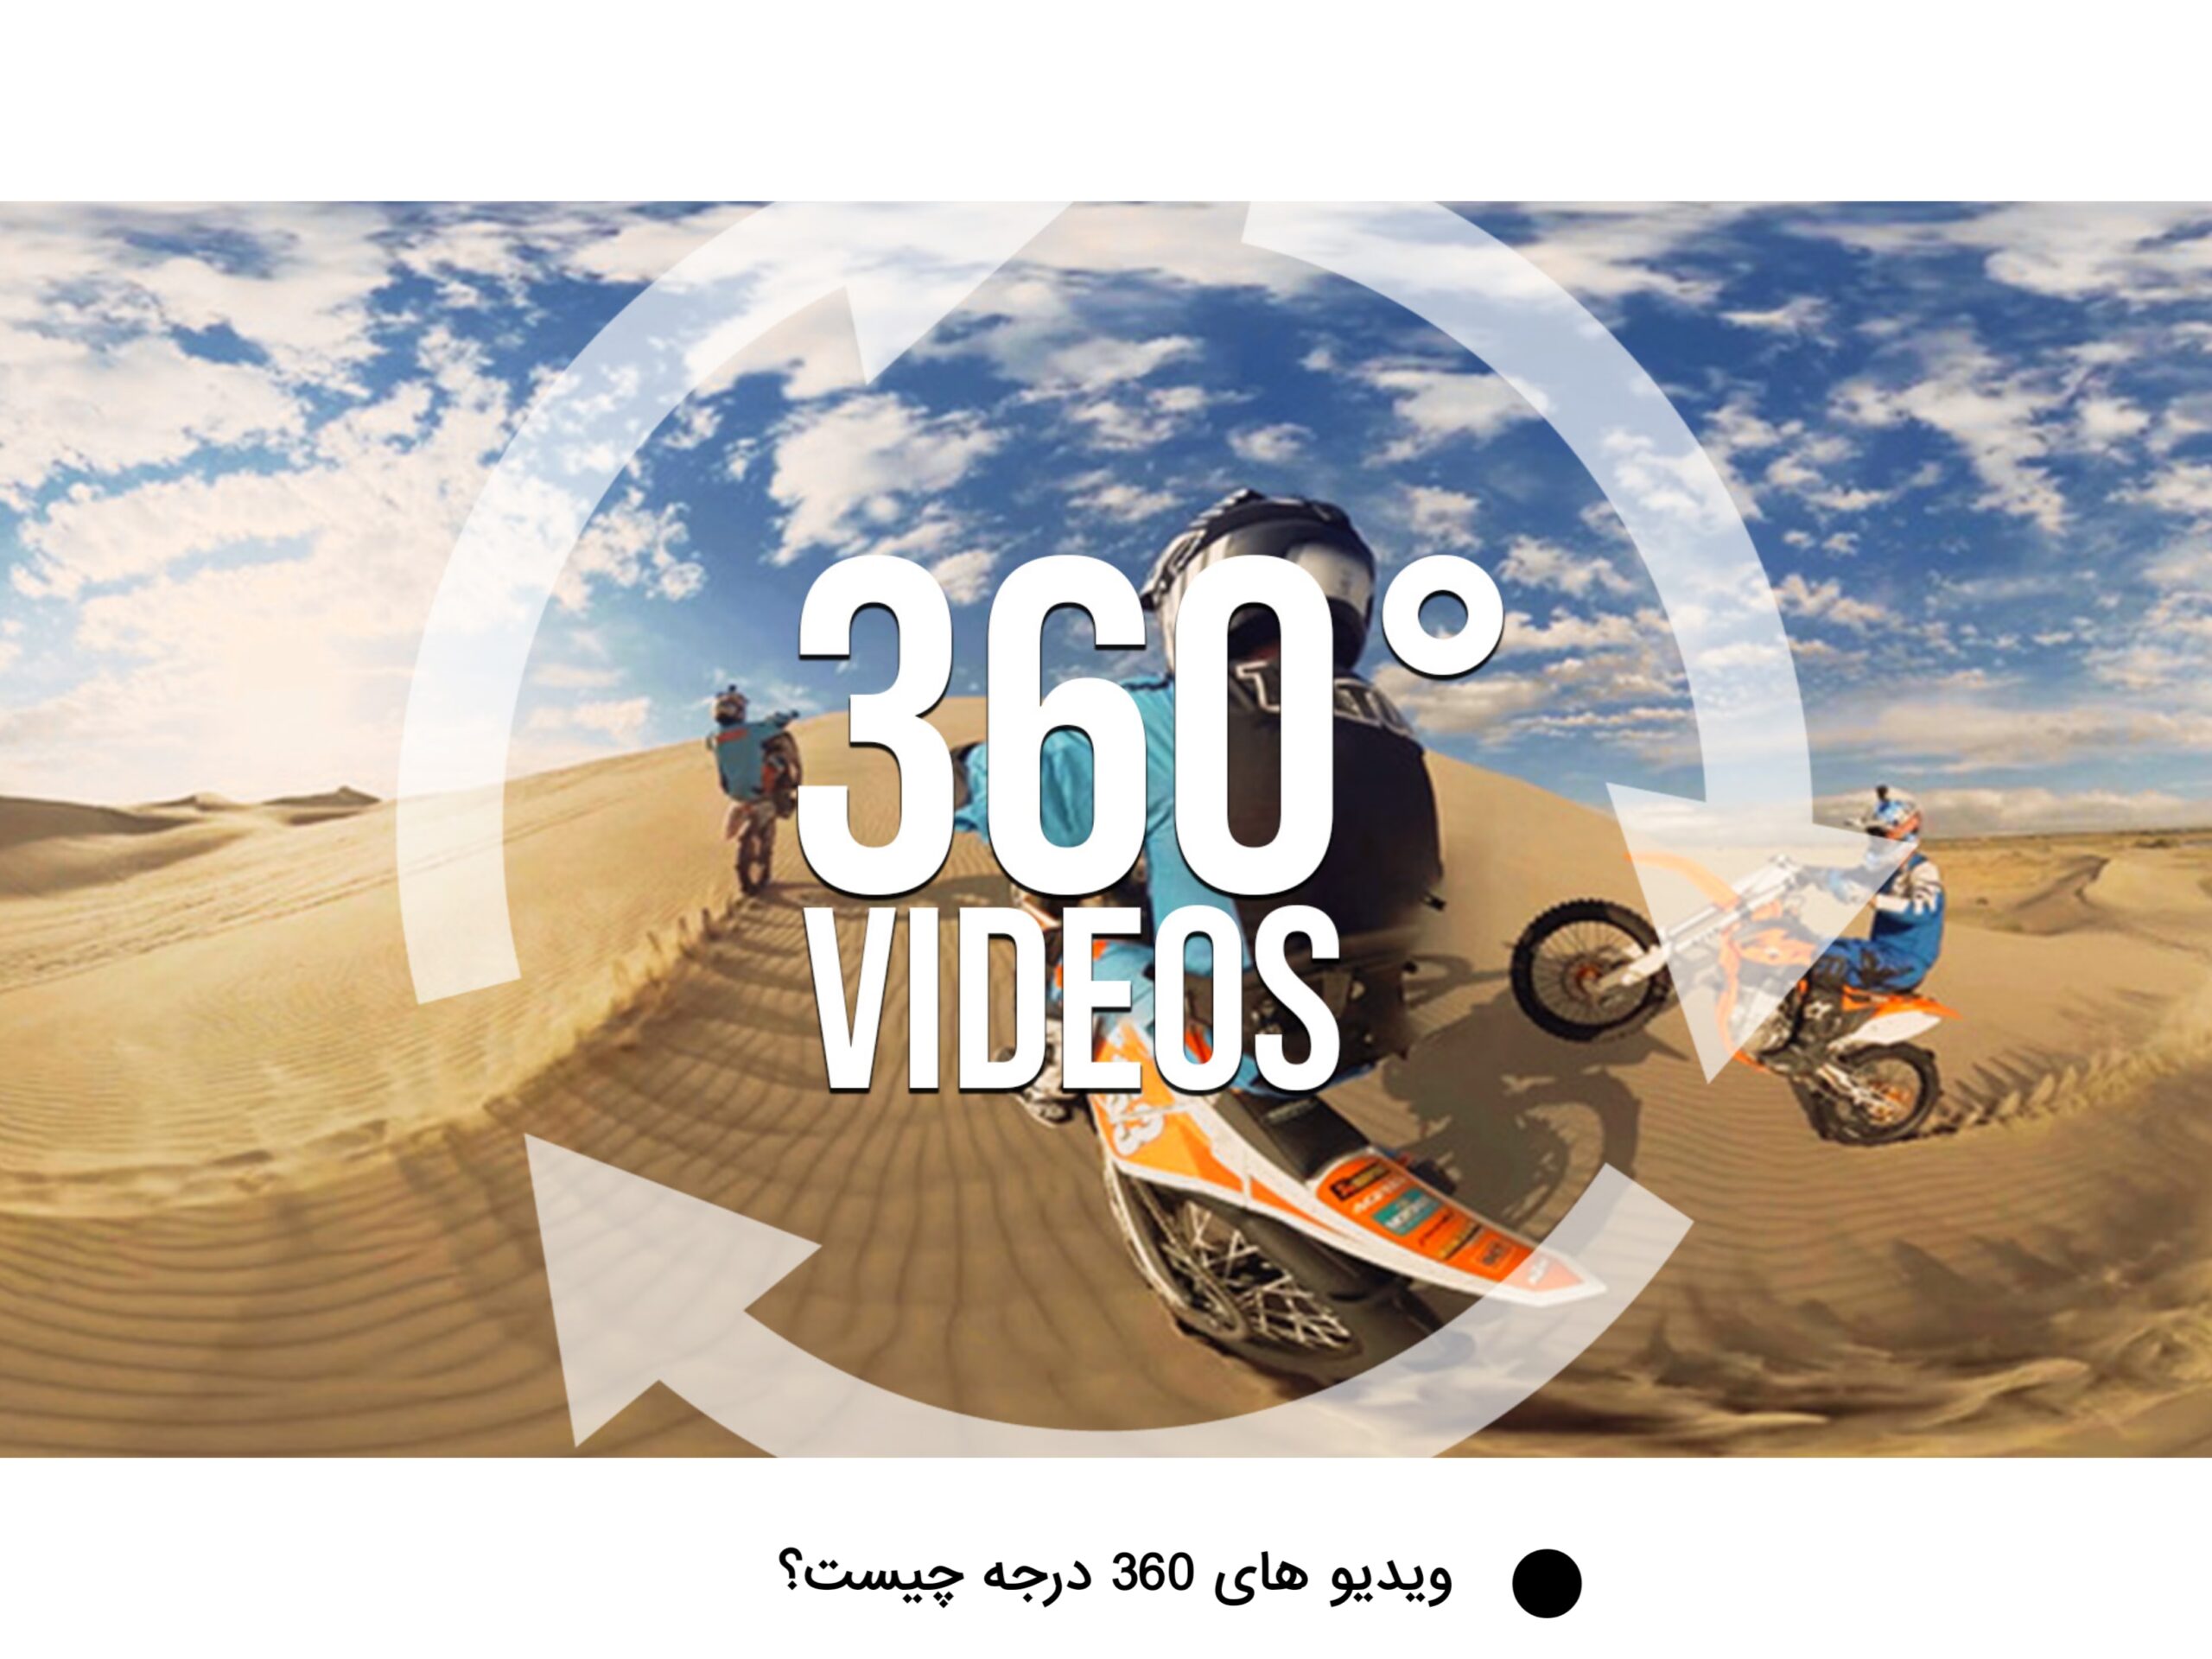 ایده یوتیوبری با ساخت ویدیو های 360 درجه